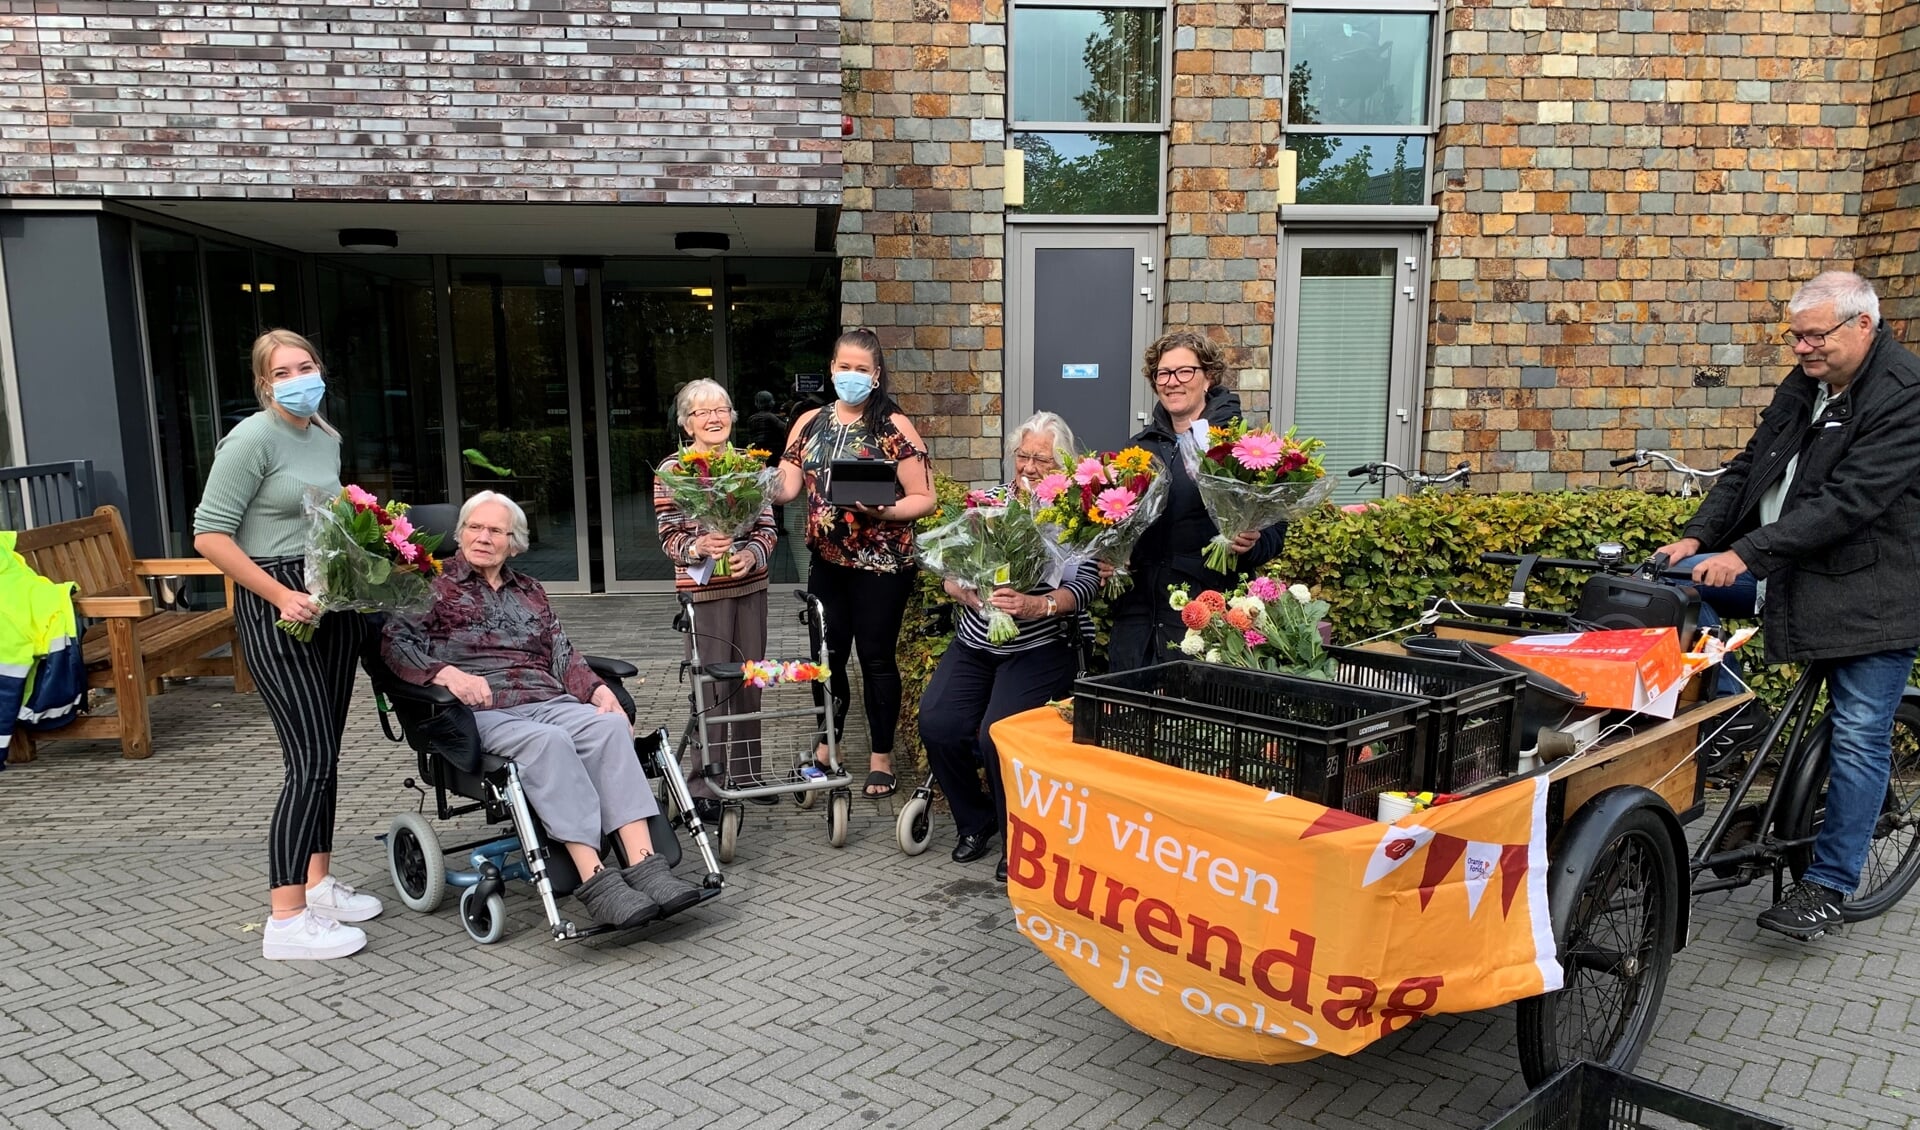 Vrijwilligers van wijkvereniging 't Hooiland gingen met de bakfiets op pad om de bewoners van de Mariënhof een bloemetje te bezorgen in het kader van Burendag 2020. Foto: PR Hooiland